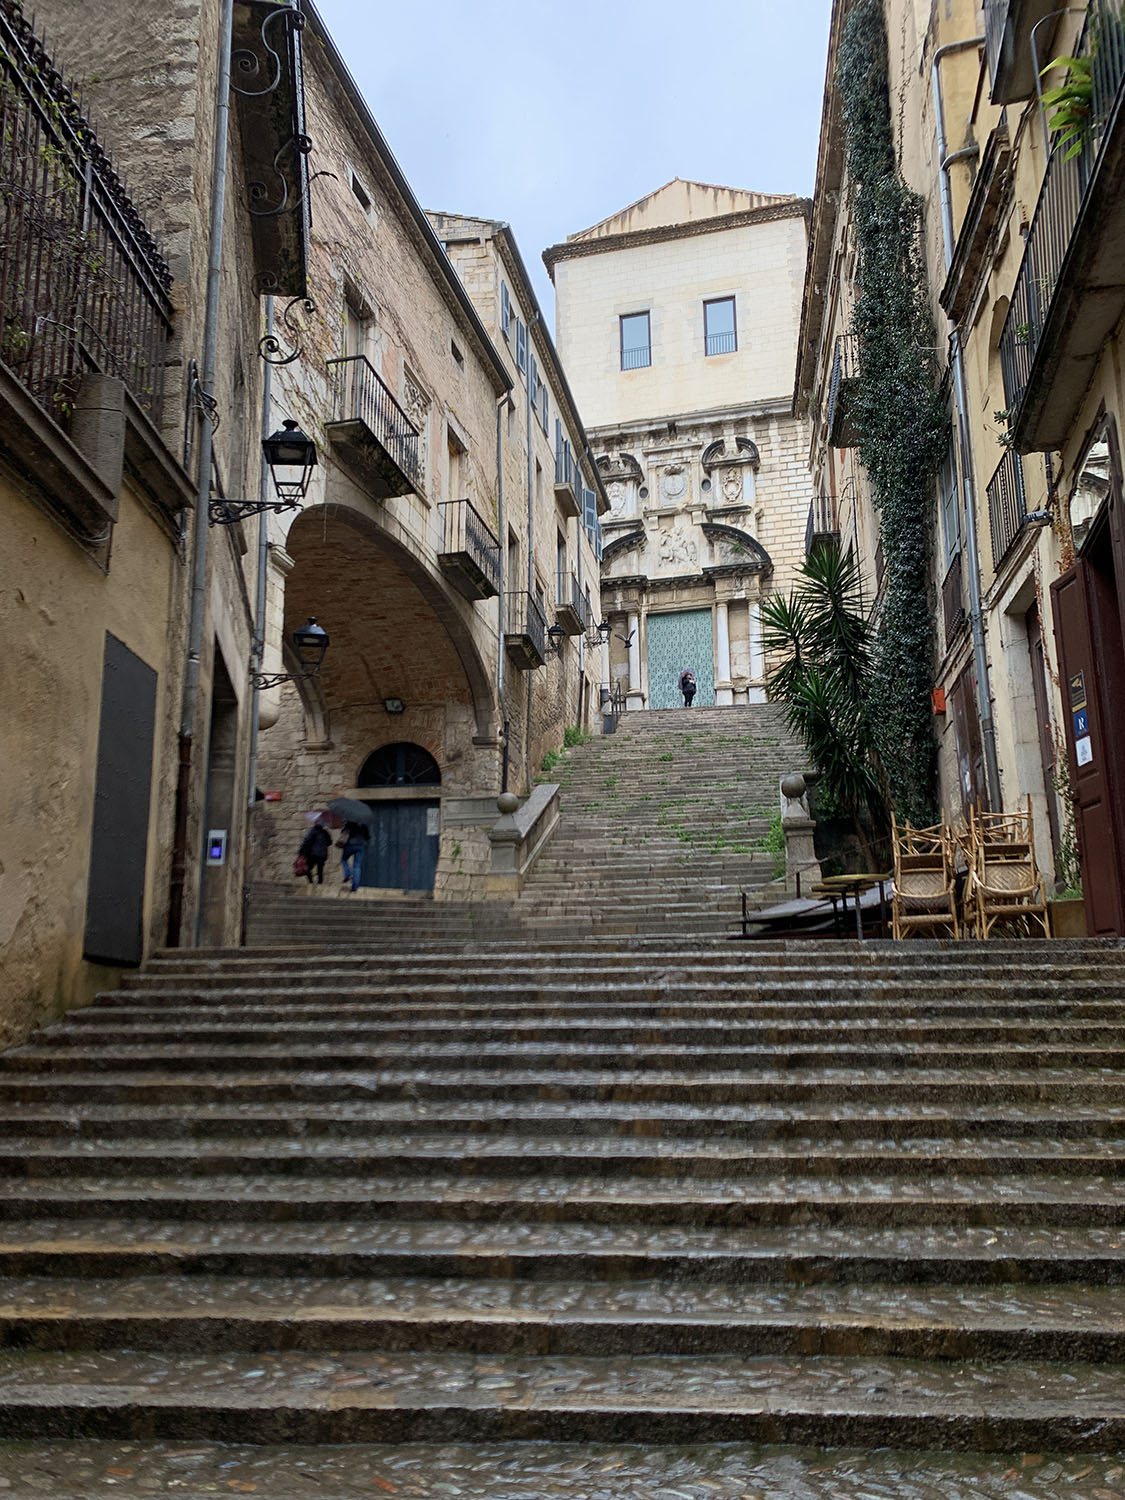 Pujada de Sant Demenec in Girona, steil ragt die Gasse mit den Stufen auf